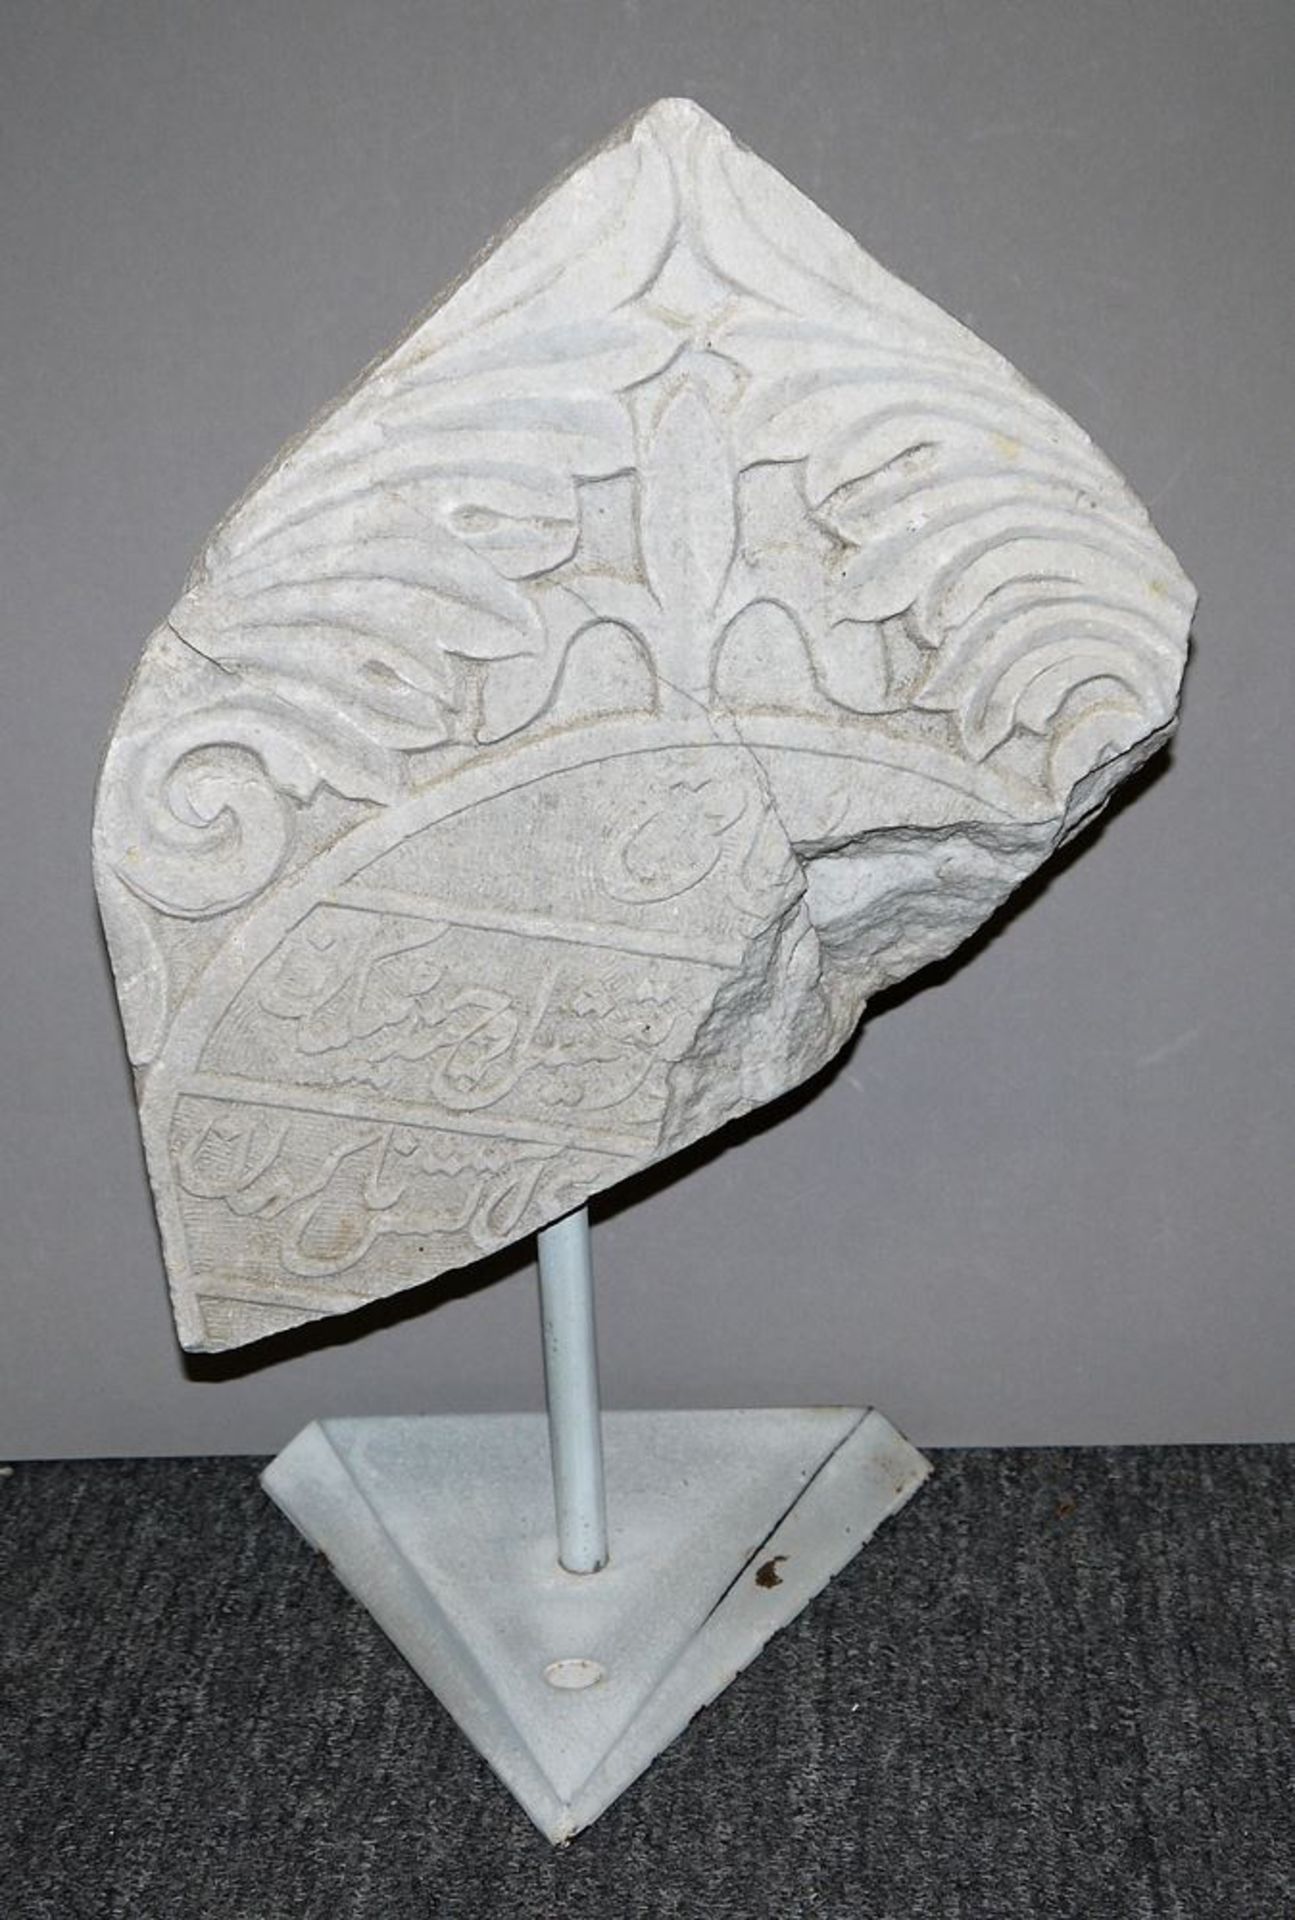 Fragment einer islamischen Grabstele, Rhodos 19. Jh.